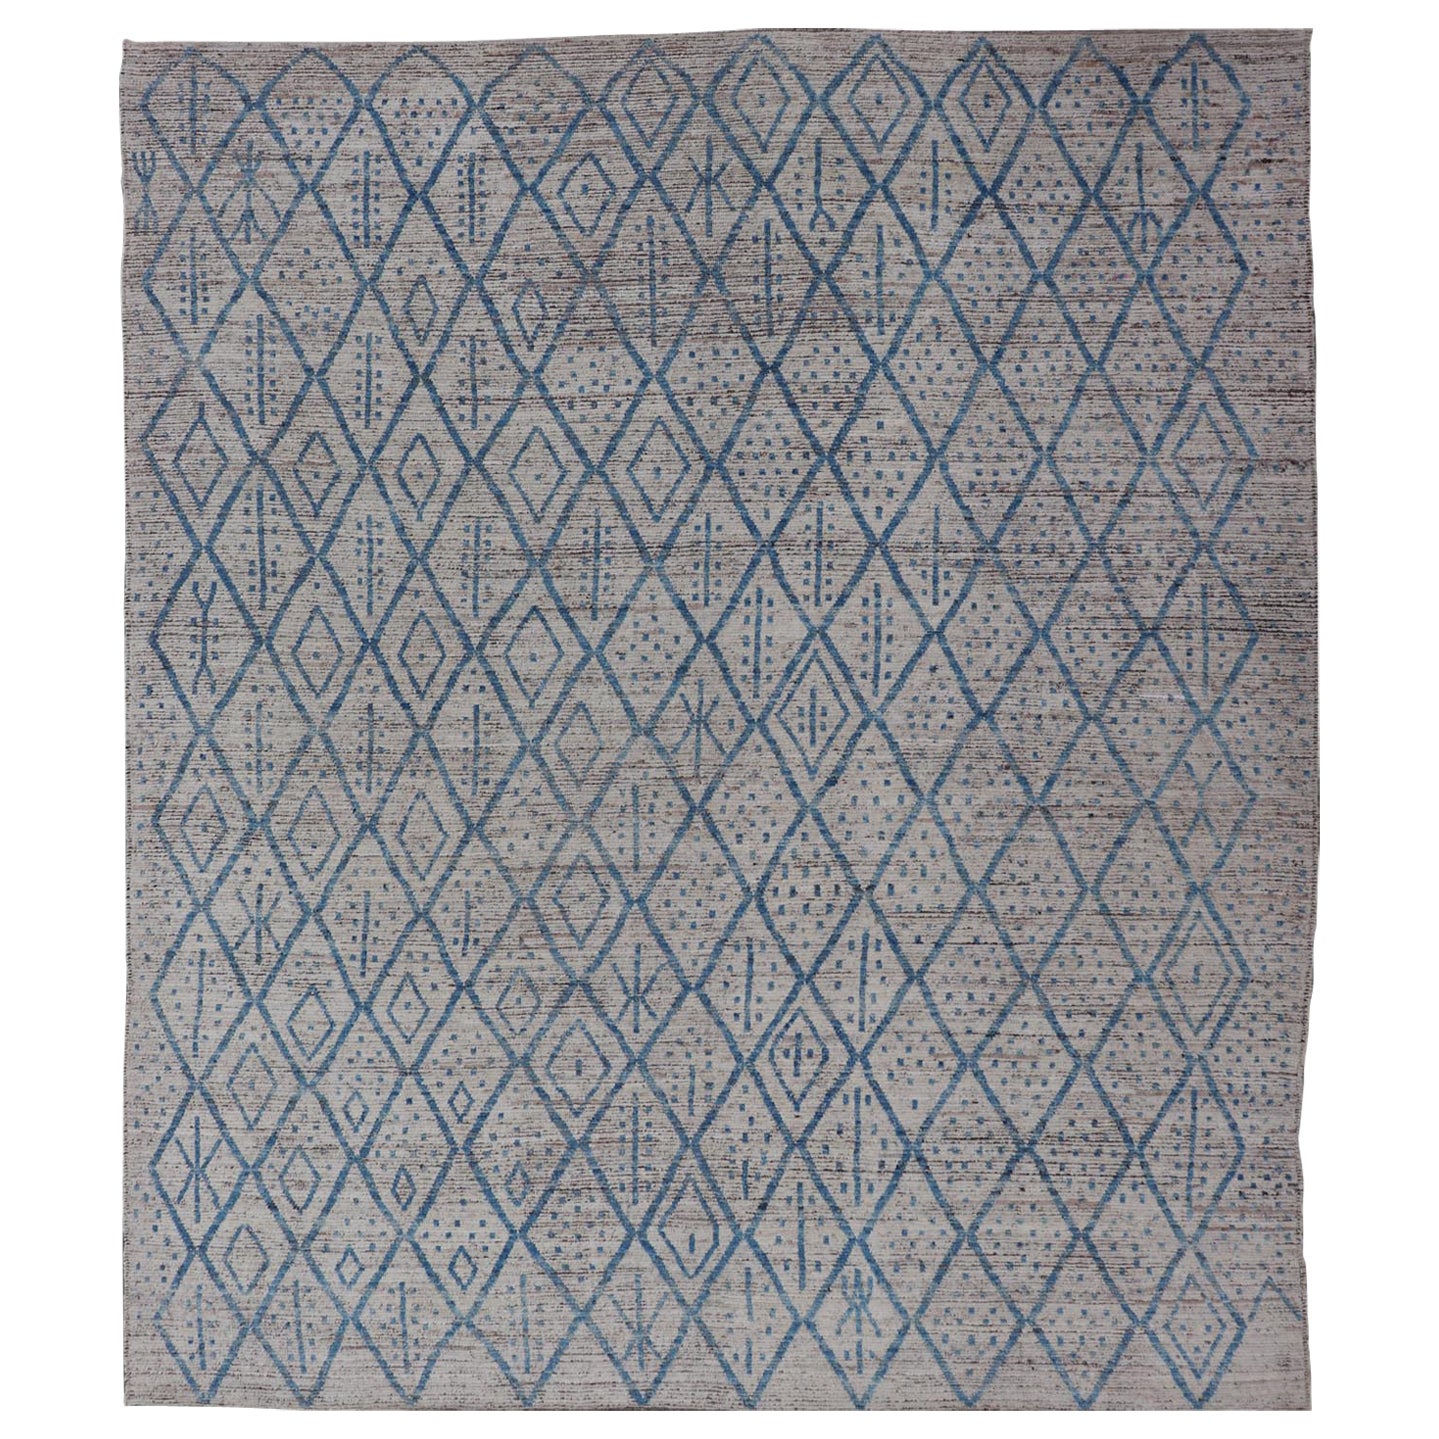 Moderner handgeknüpfter Stammesteppich aus Wolle mit subgeometrischem Design in Blau und Elfenbein